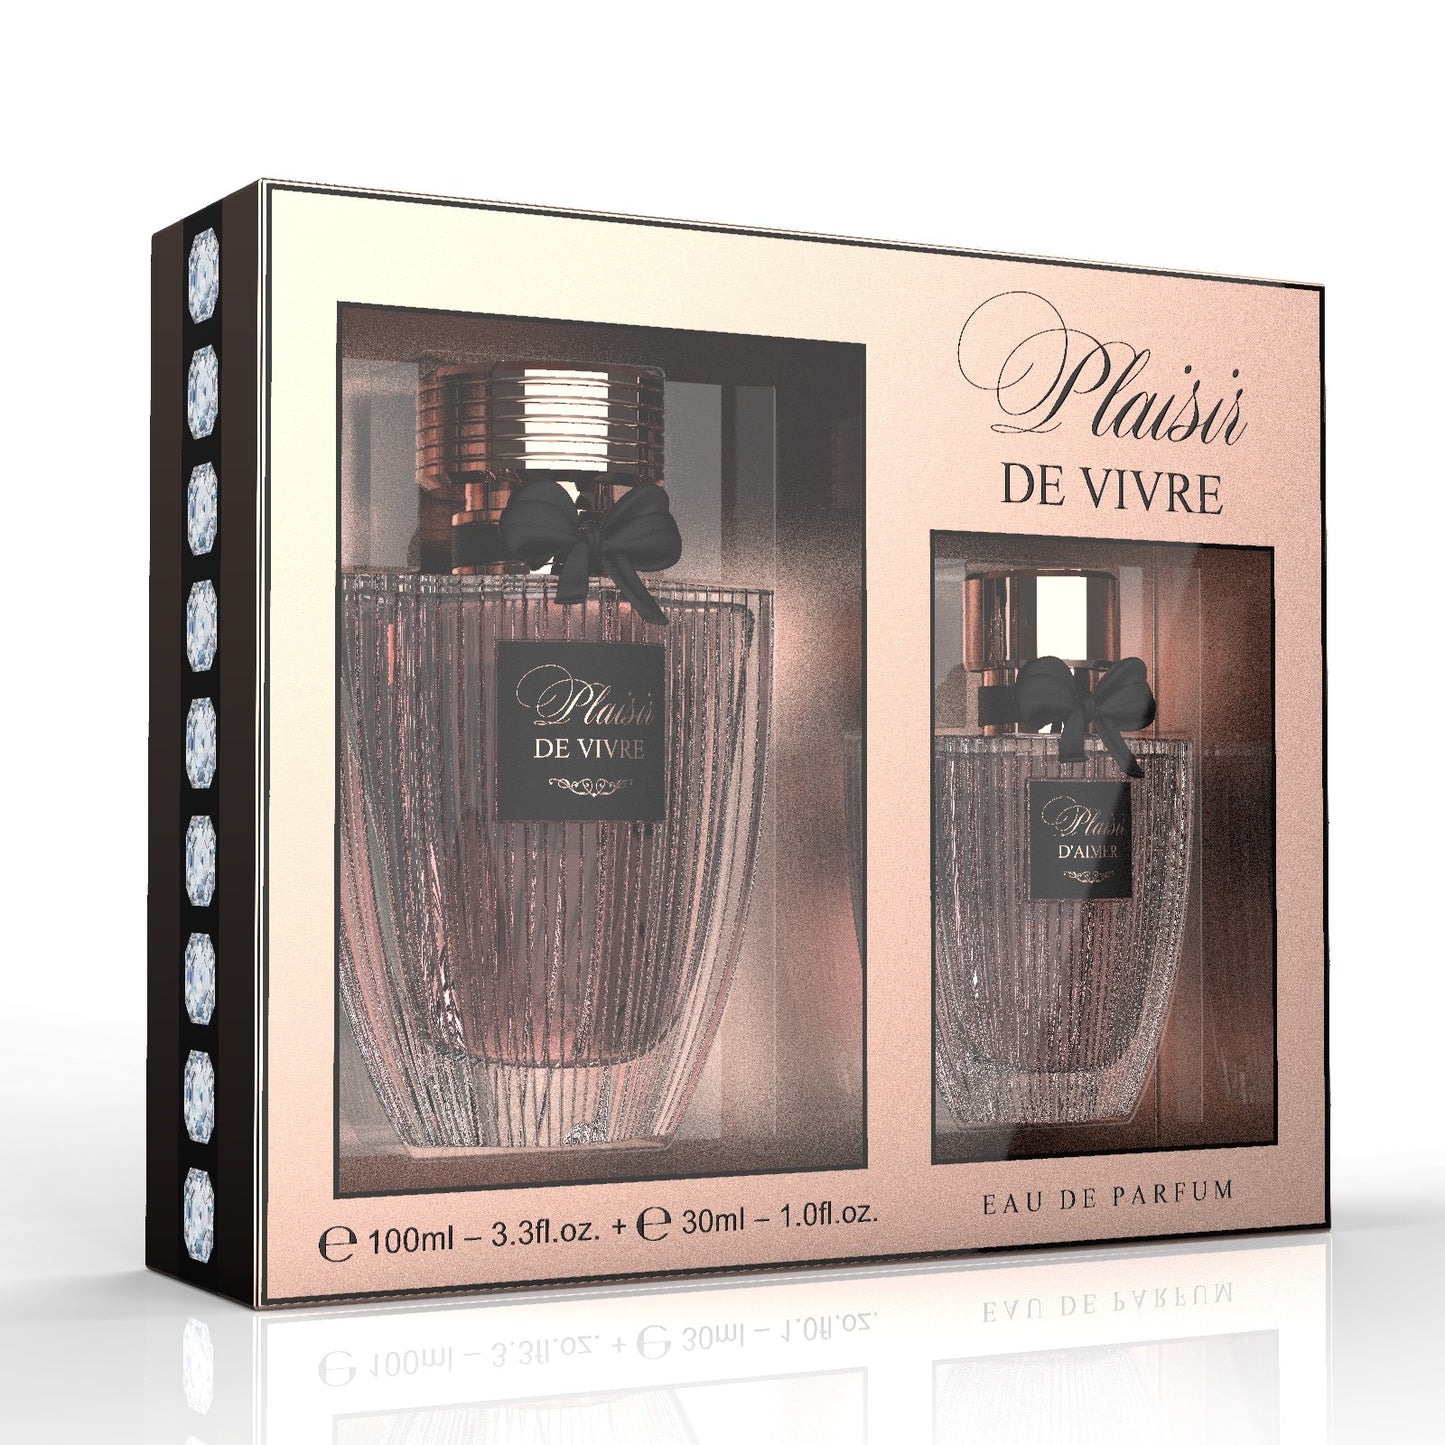 100 ml + 30 ml wody perfumowanej "PLAISIR DE VIVRE" Orientalno - Kwiatowy zapach dla kobiet